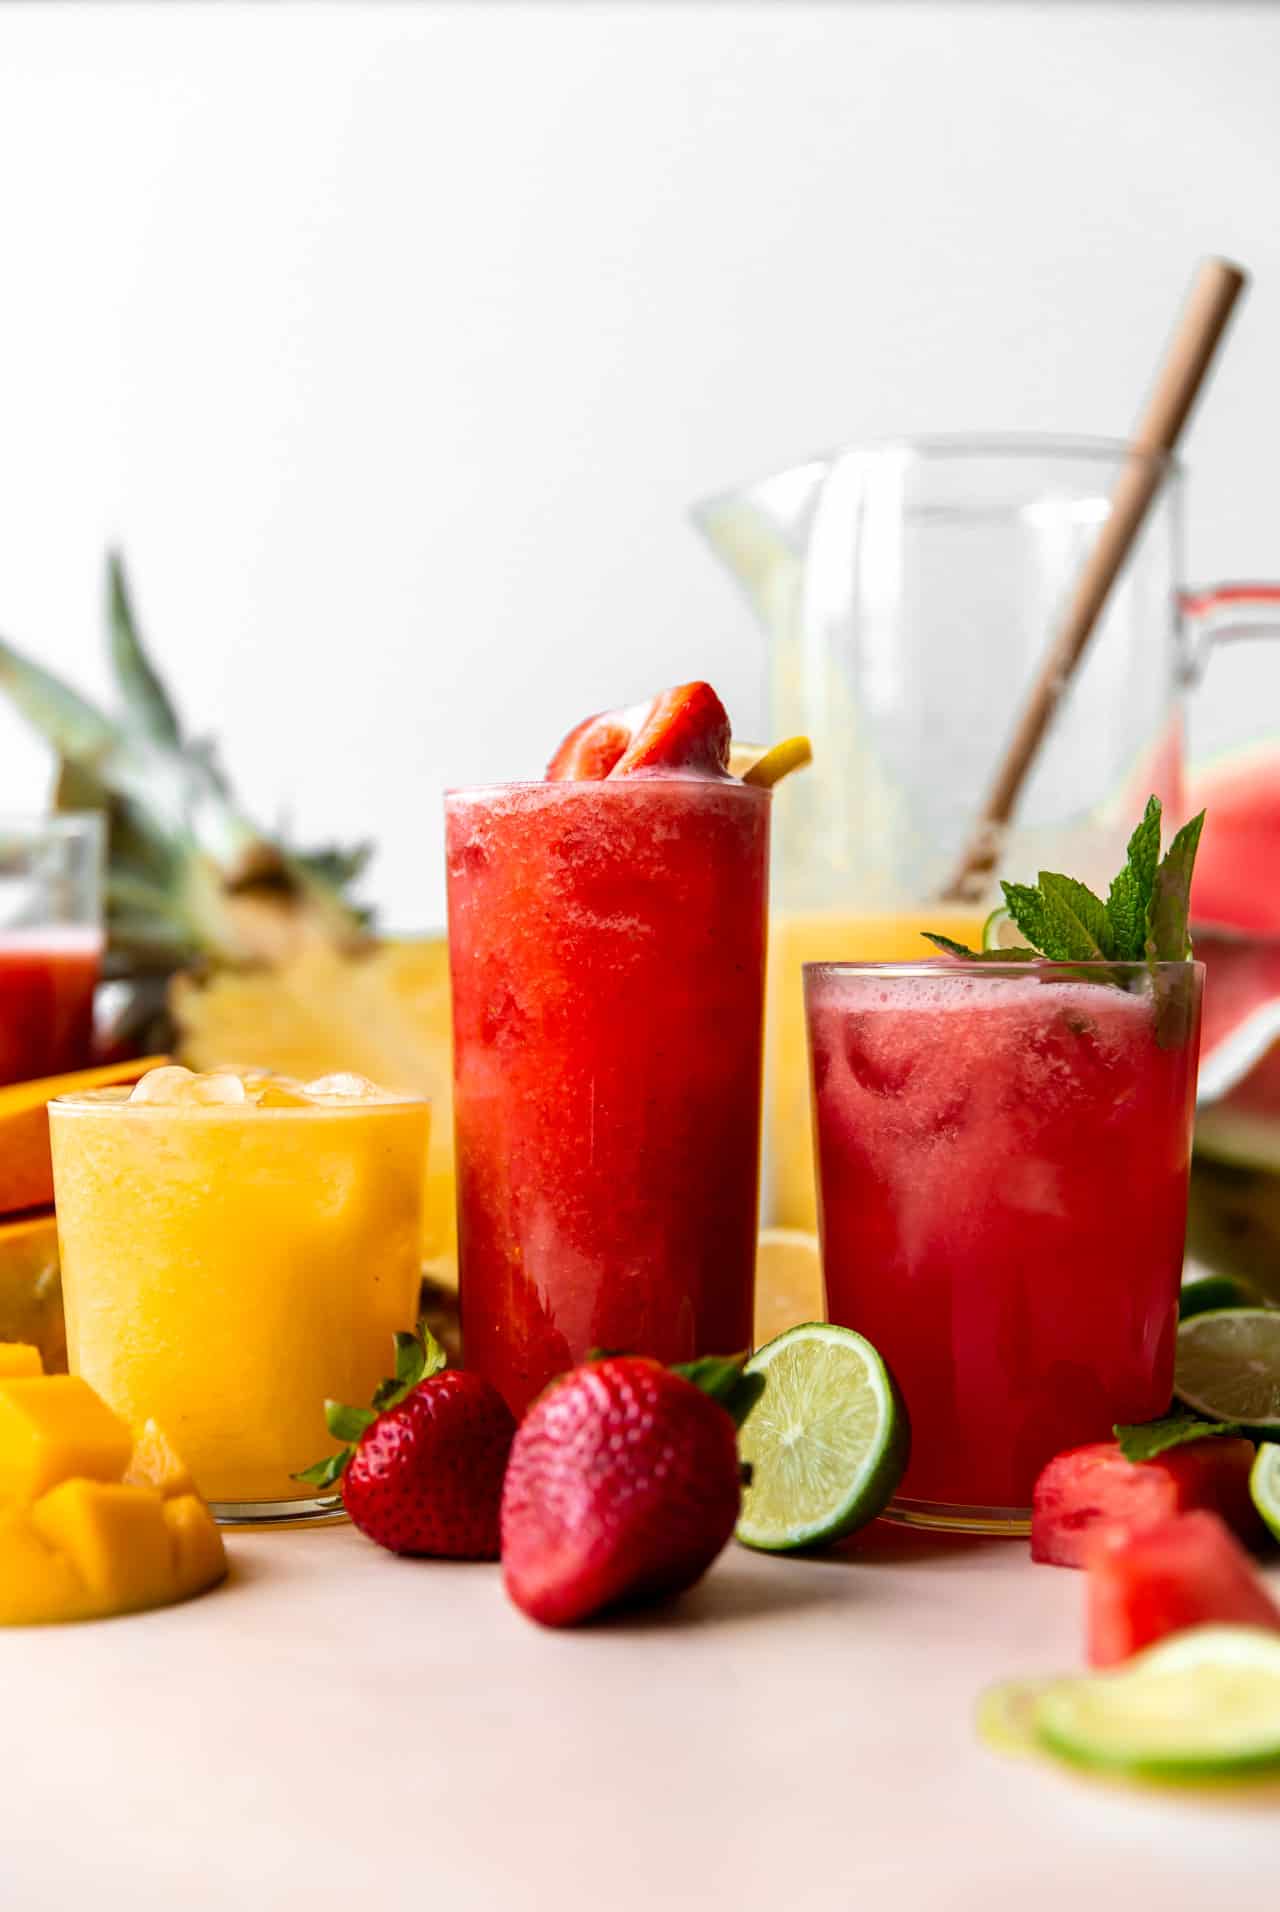 Les verres d'agua fresca sont alignés avec des fraises, des pastèques et des ananas-mangues.